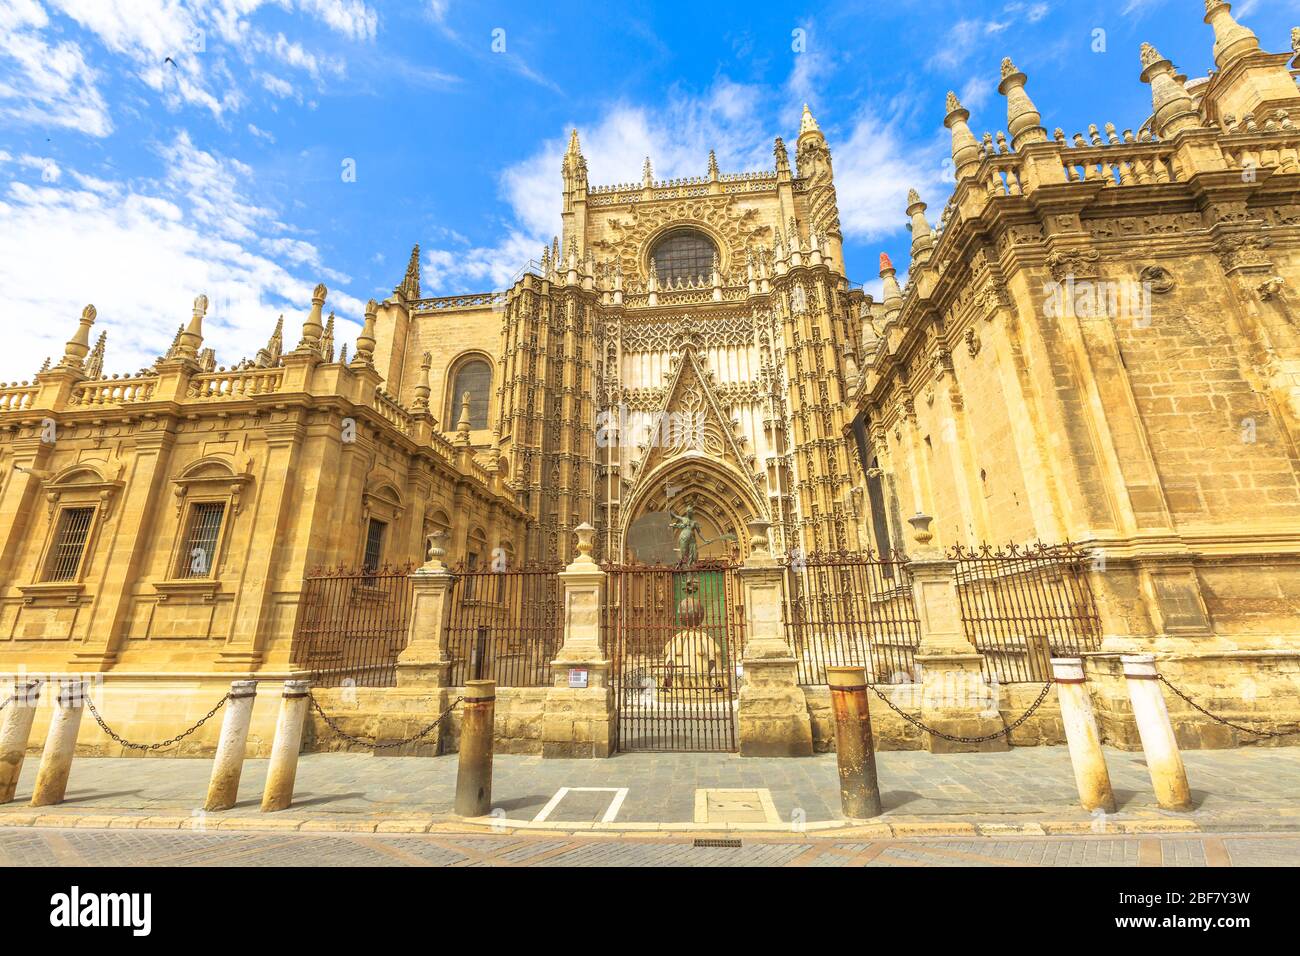 La Cattedrale di Siviglia è una delle attrazioni turistiche di Siviglia, Andalusia, Spagna. Cattedrale di Santa Maria della sede, un cattolico romano e il Foto Stock